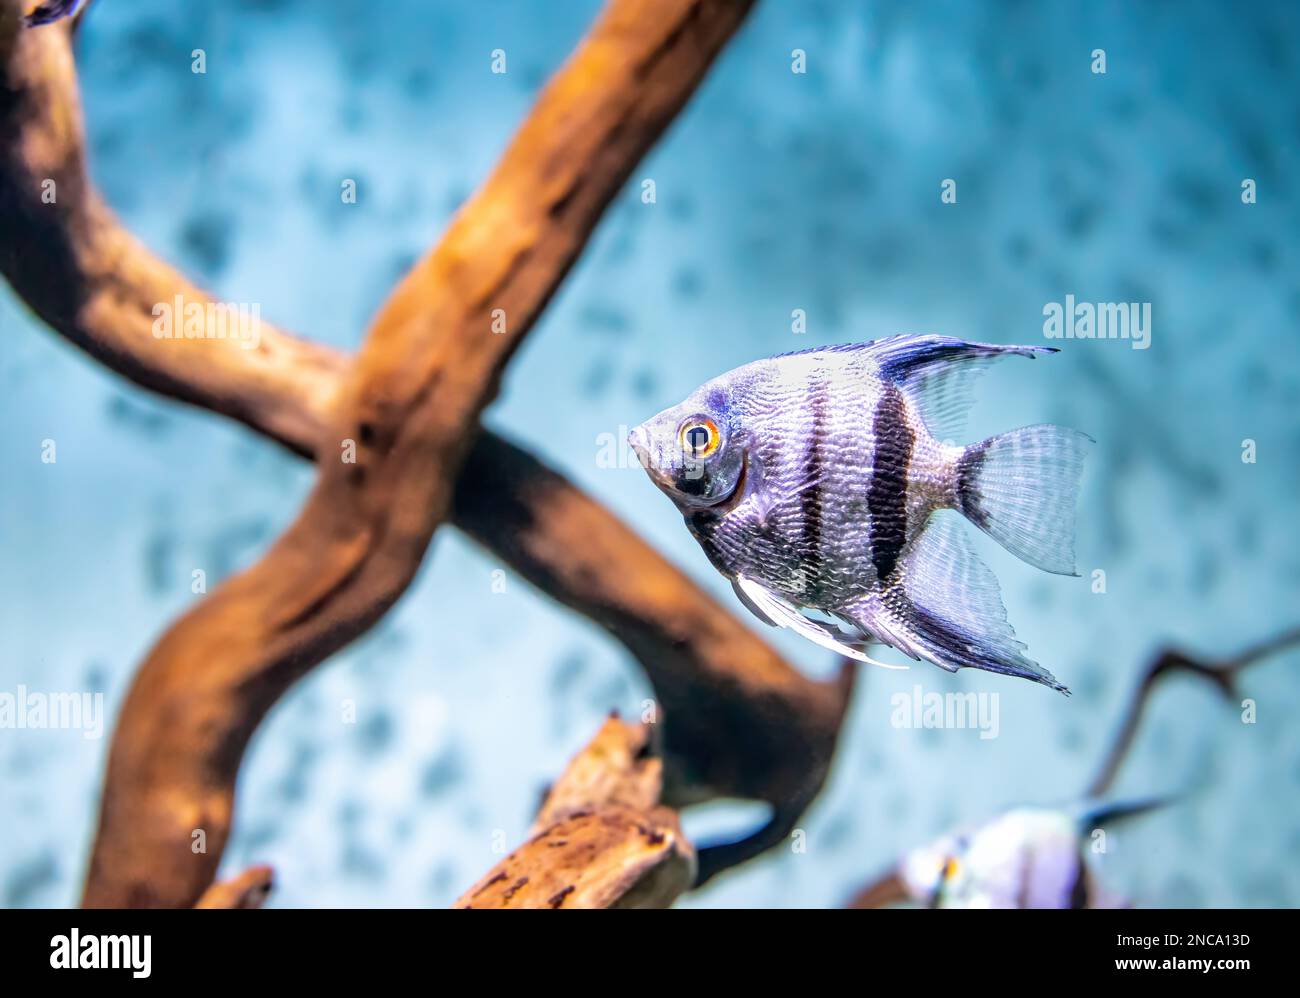 Tropical fish Pterophyllum scalare altum swimming in aquarium blue water. Tropical striped silver black fishes in oceanarium pool Stock Photo